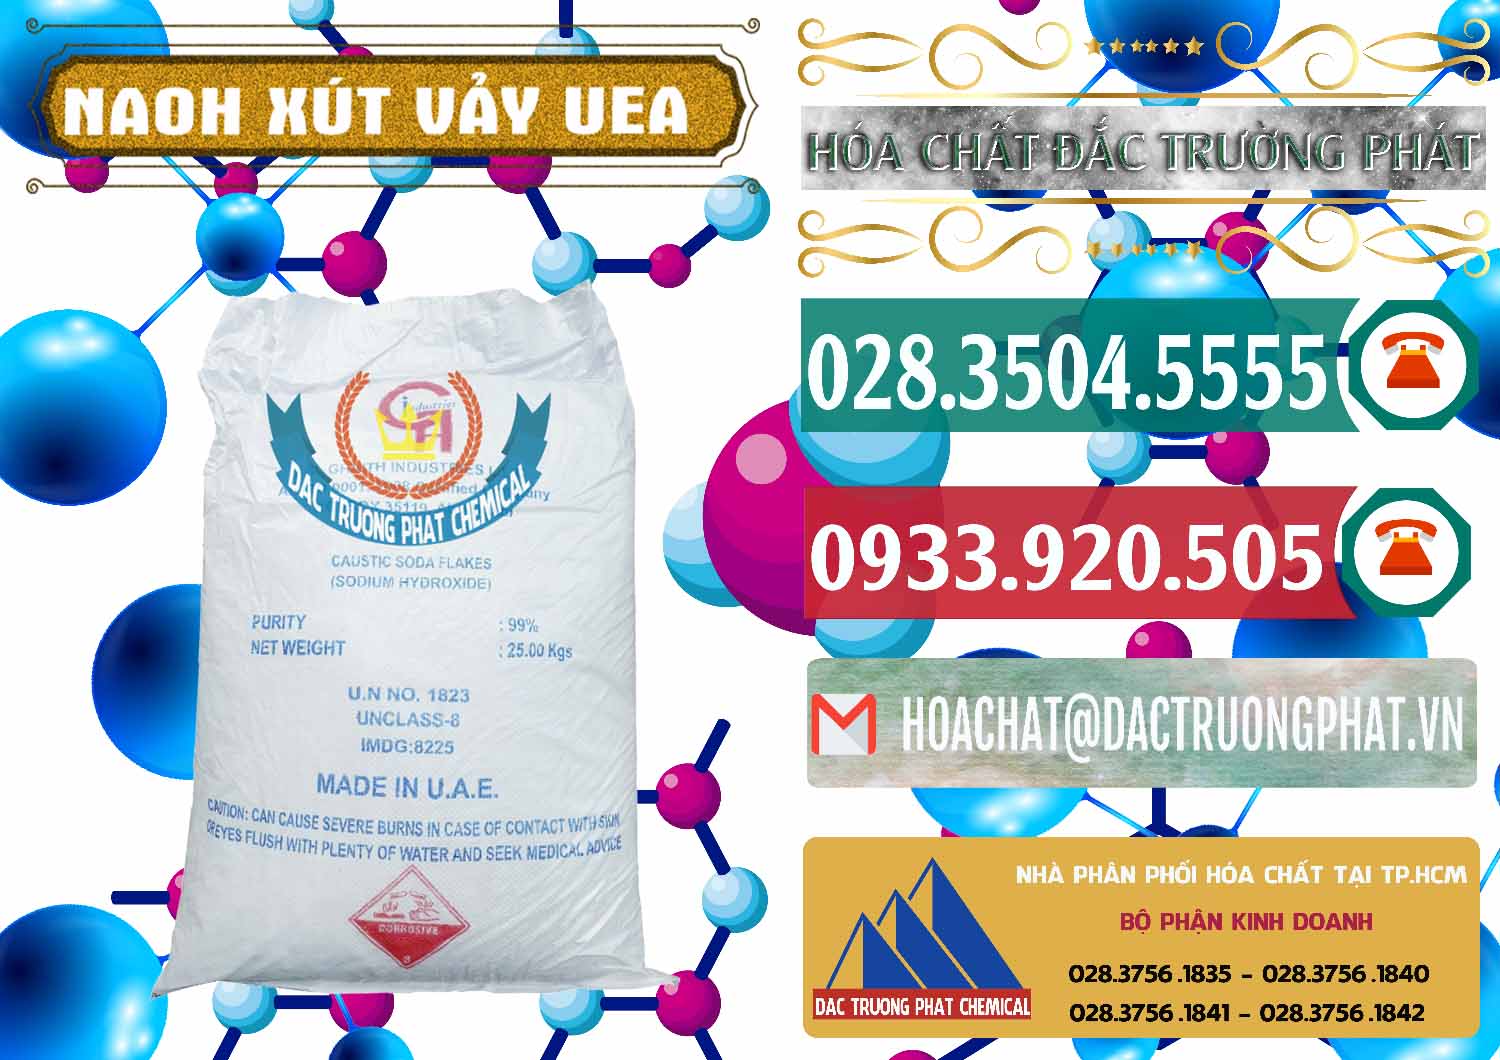 Phân phối - bán Xút Vảy - NaOH Vảy UAE Iran - 0432 - Cty chuyên bán & phân phối hóa chất tại TP.HCM - muabanhoachat.vn